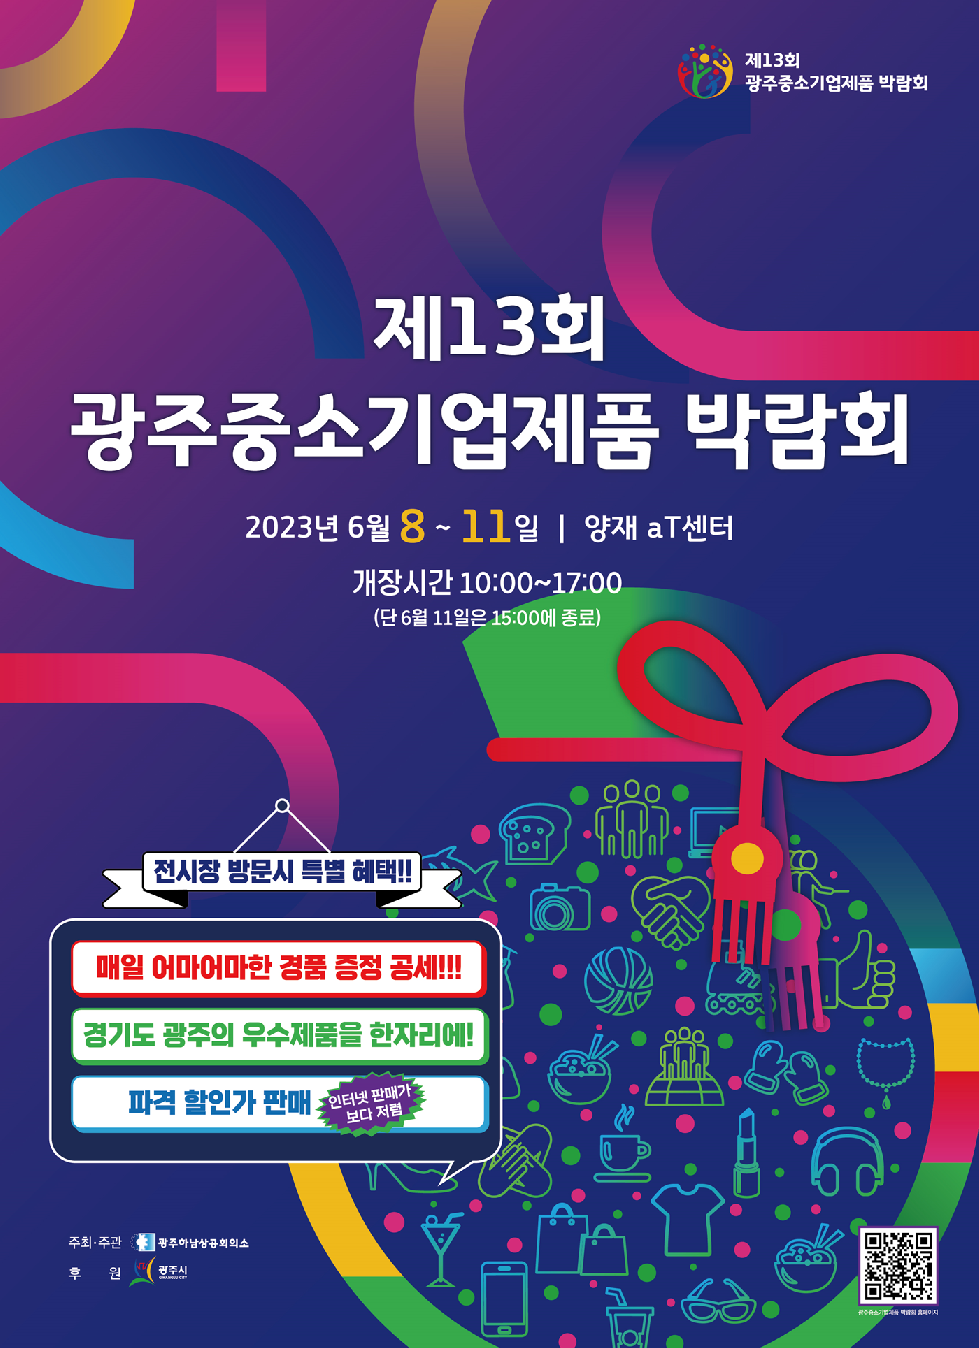 양재동 aT센터에서 광주중소기업제품 박람회 개최